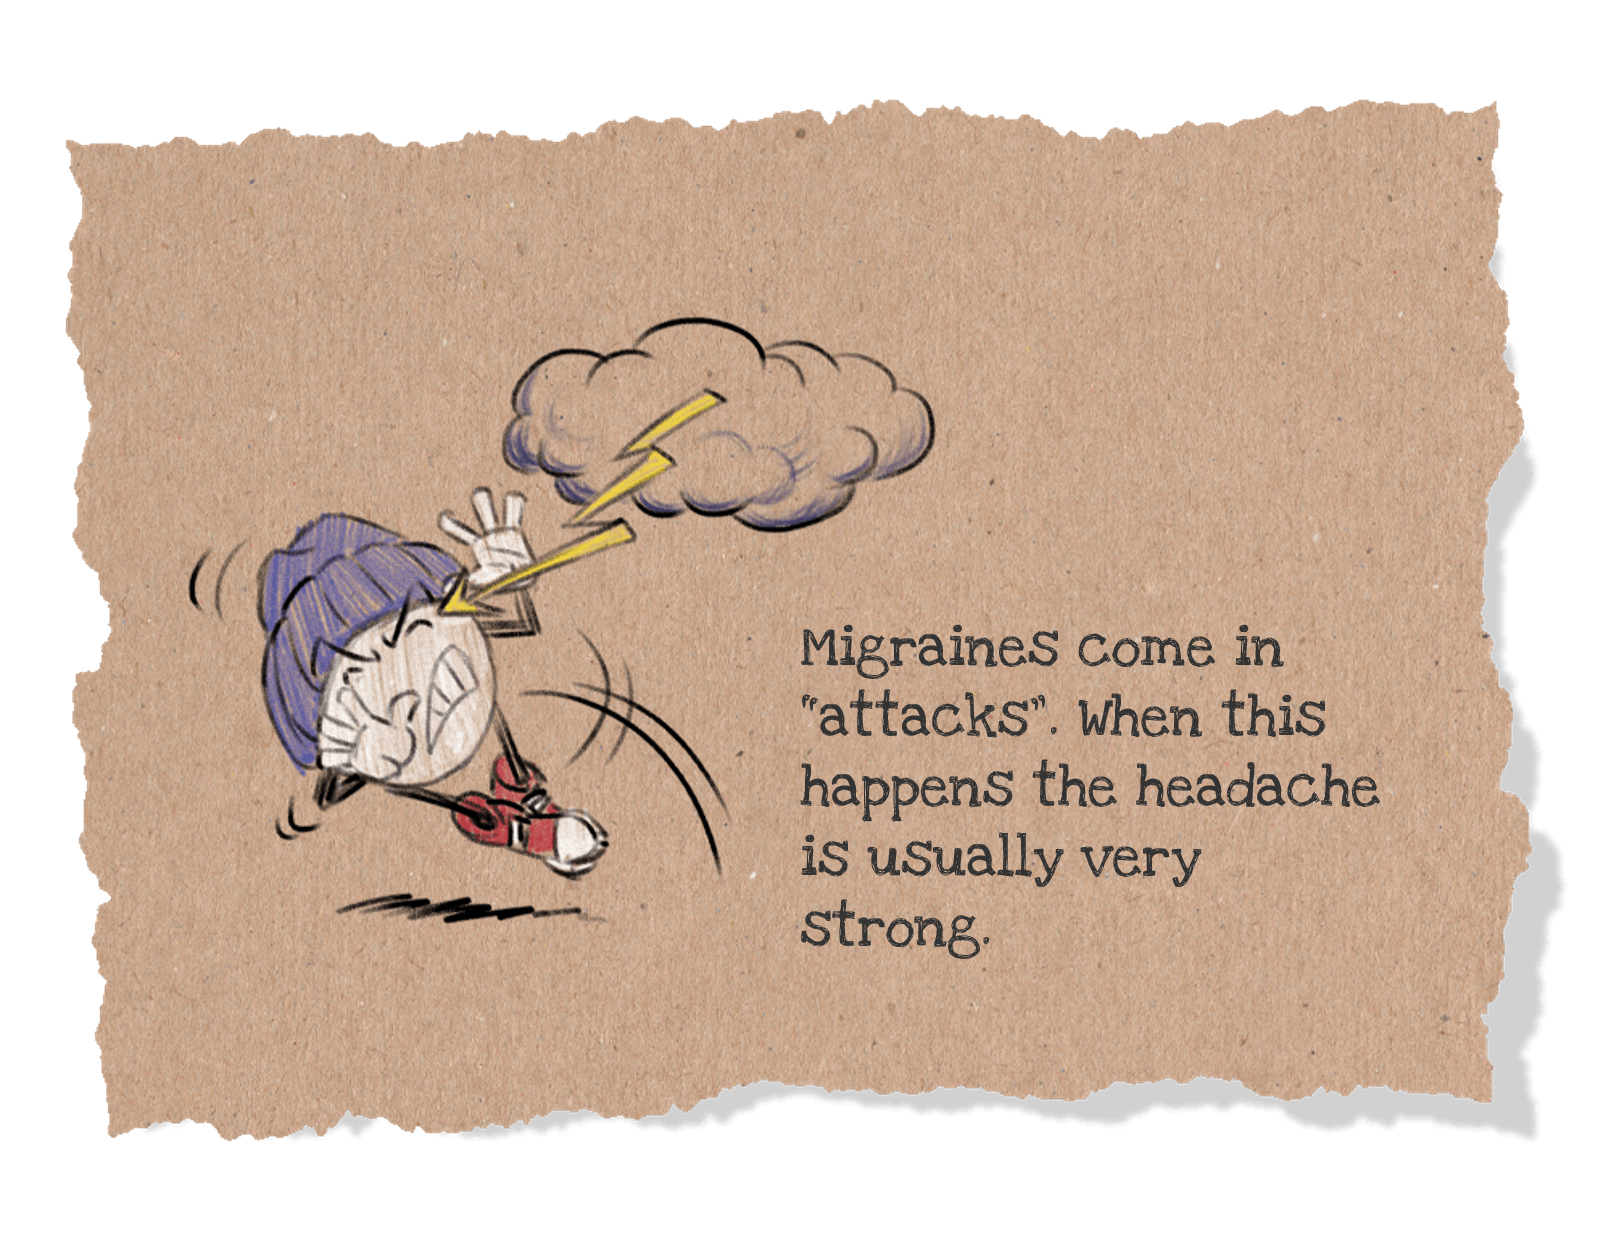 Migraine comes in attacks